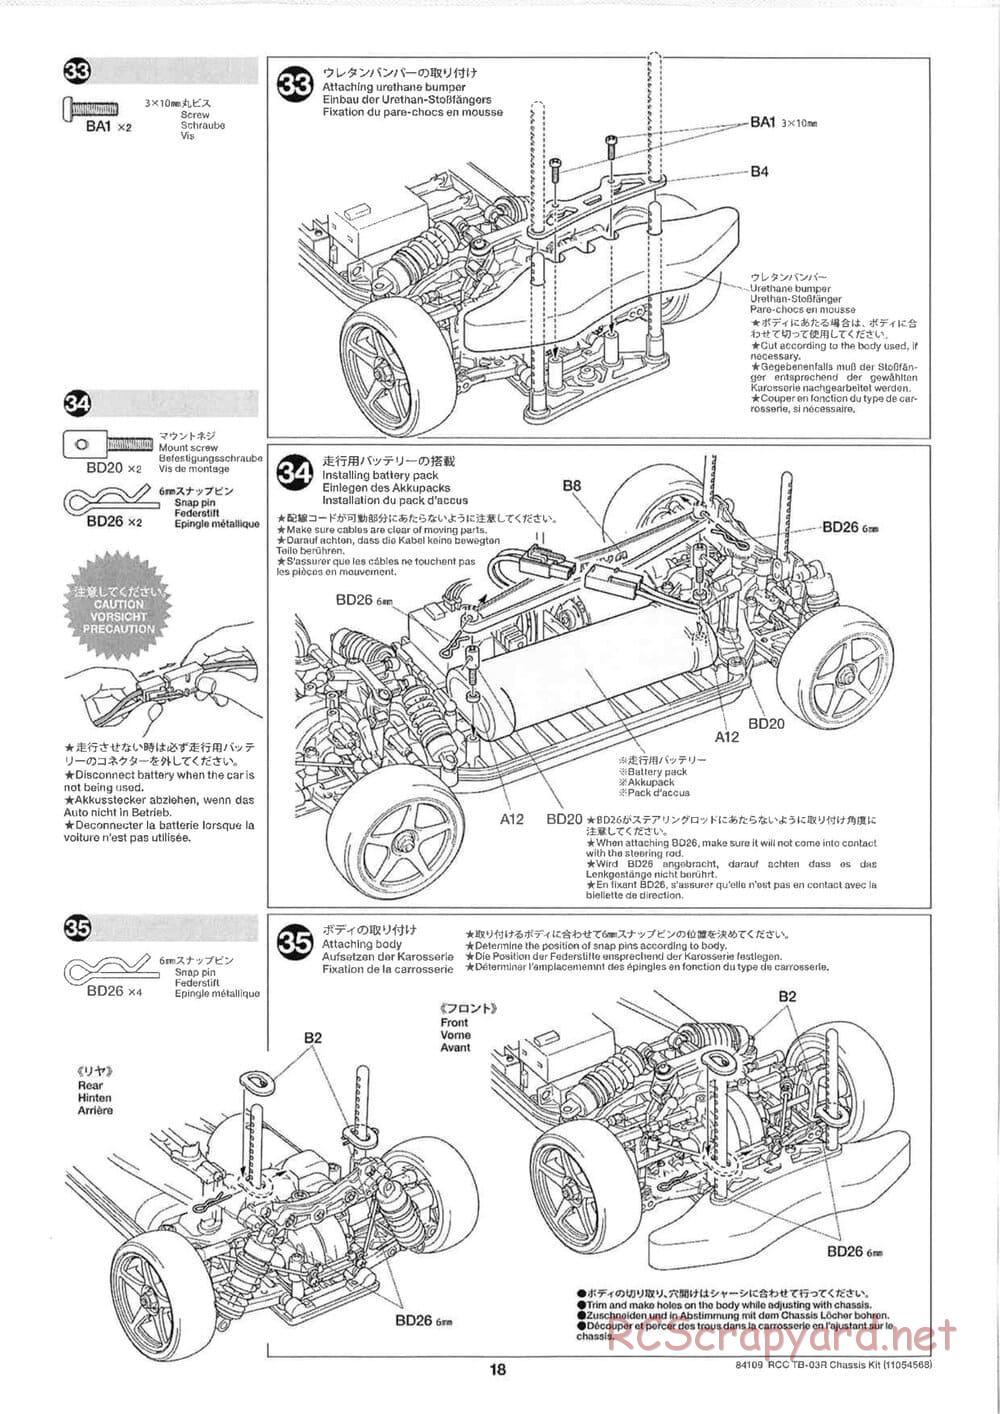 Tamiya - TB-03R Chassis - Manual - Page 18